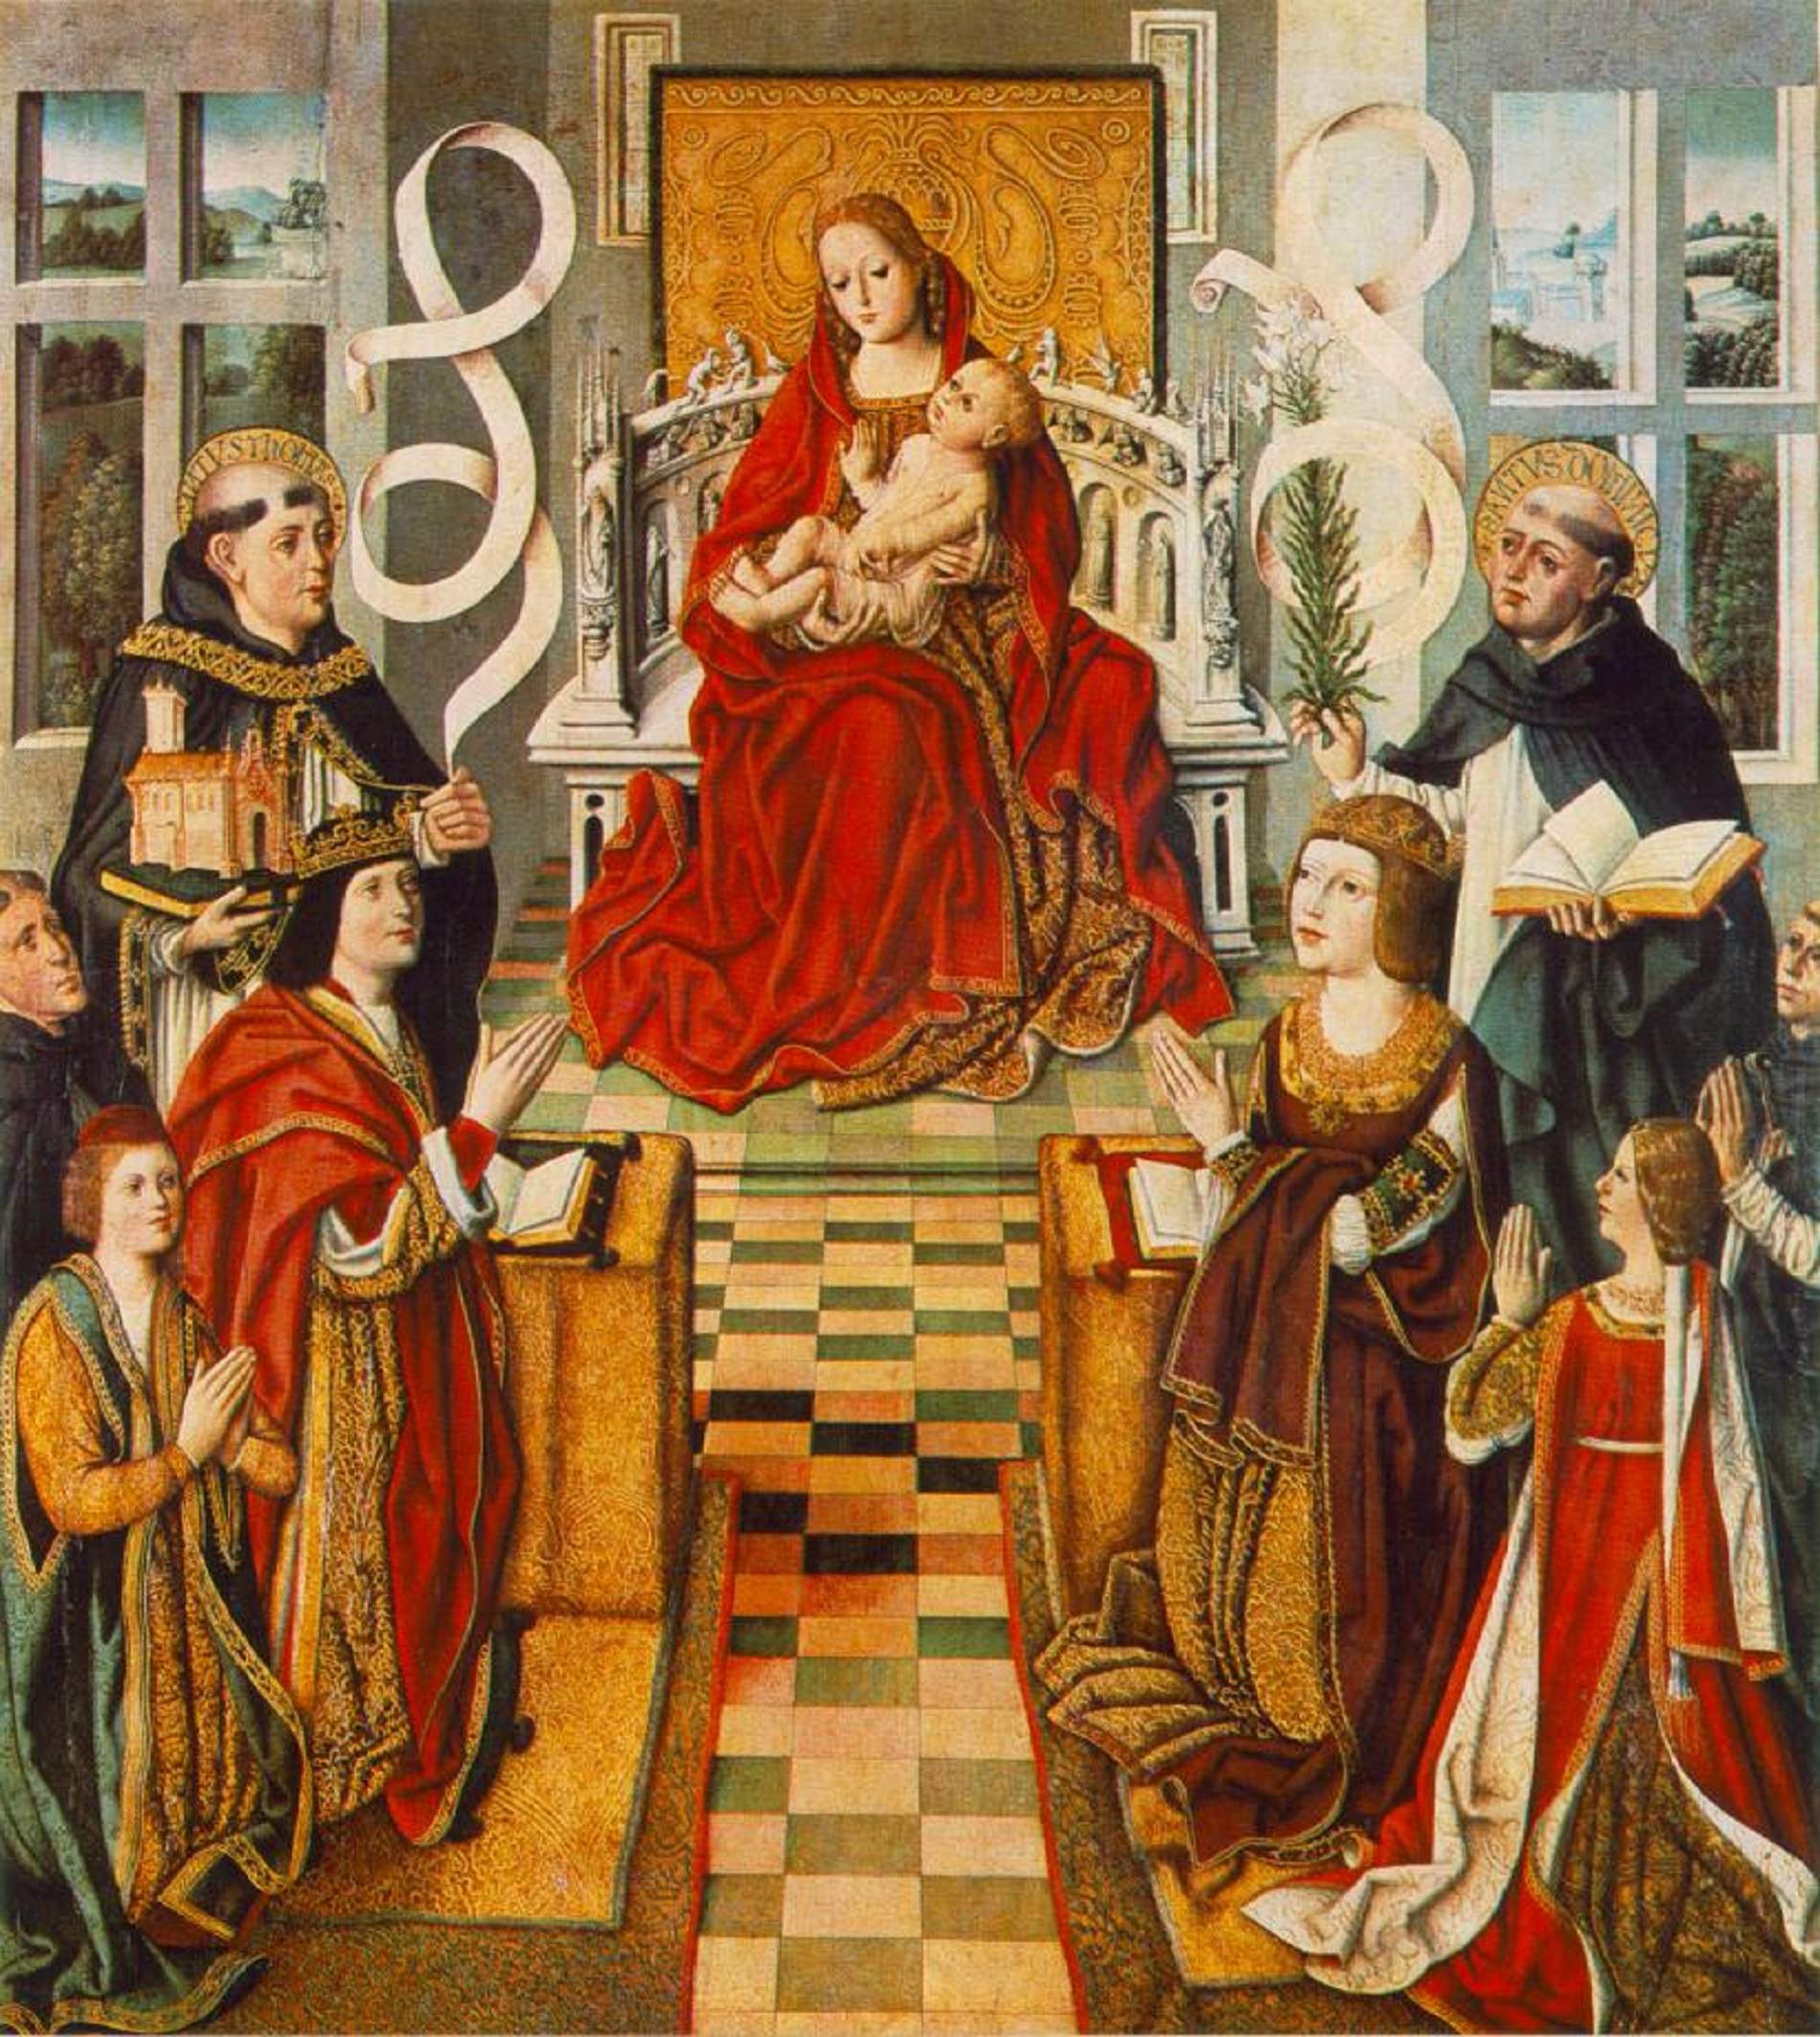 Representació de la familia dels Reis Catolics orant a la Mare de Deu dels Navegants (segles XV). Font Museu del Prado